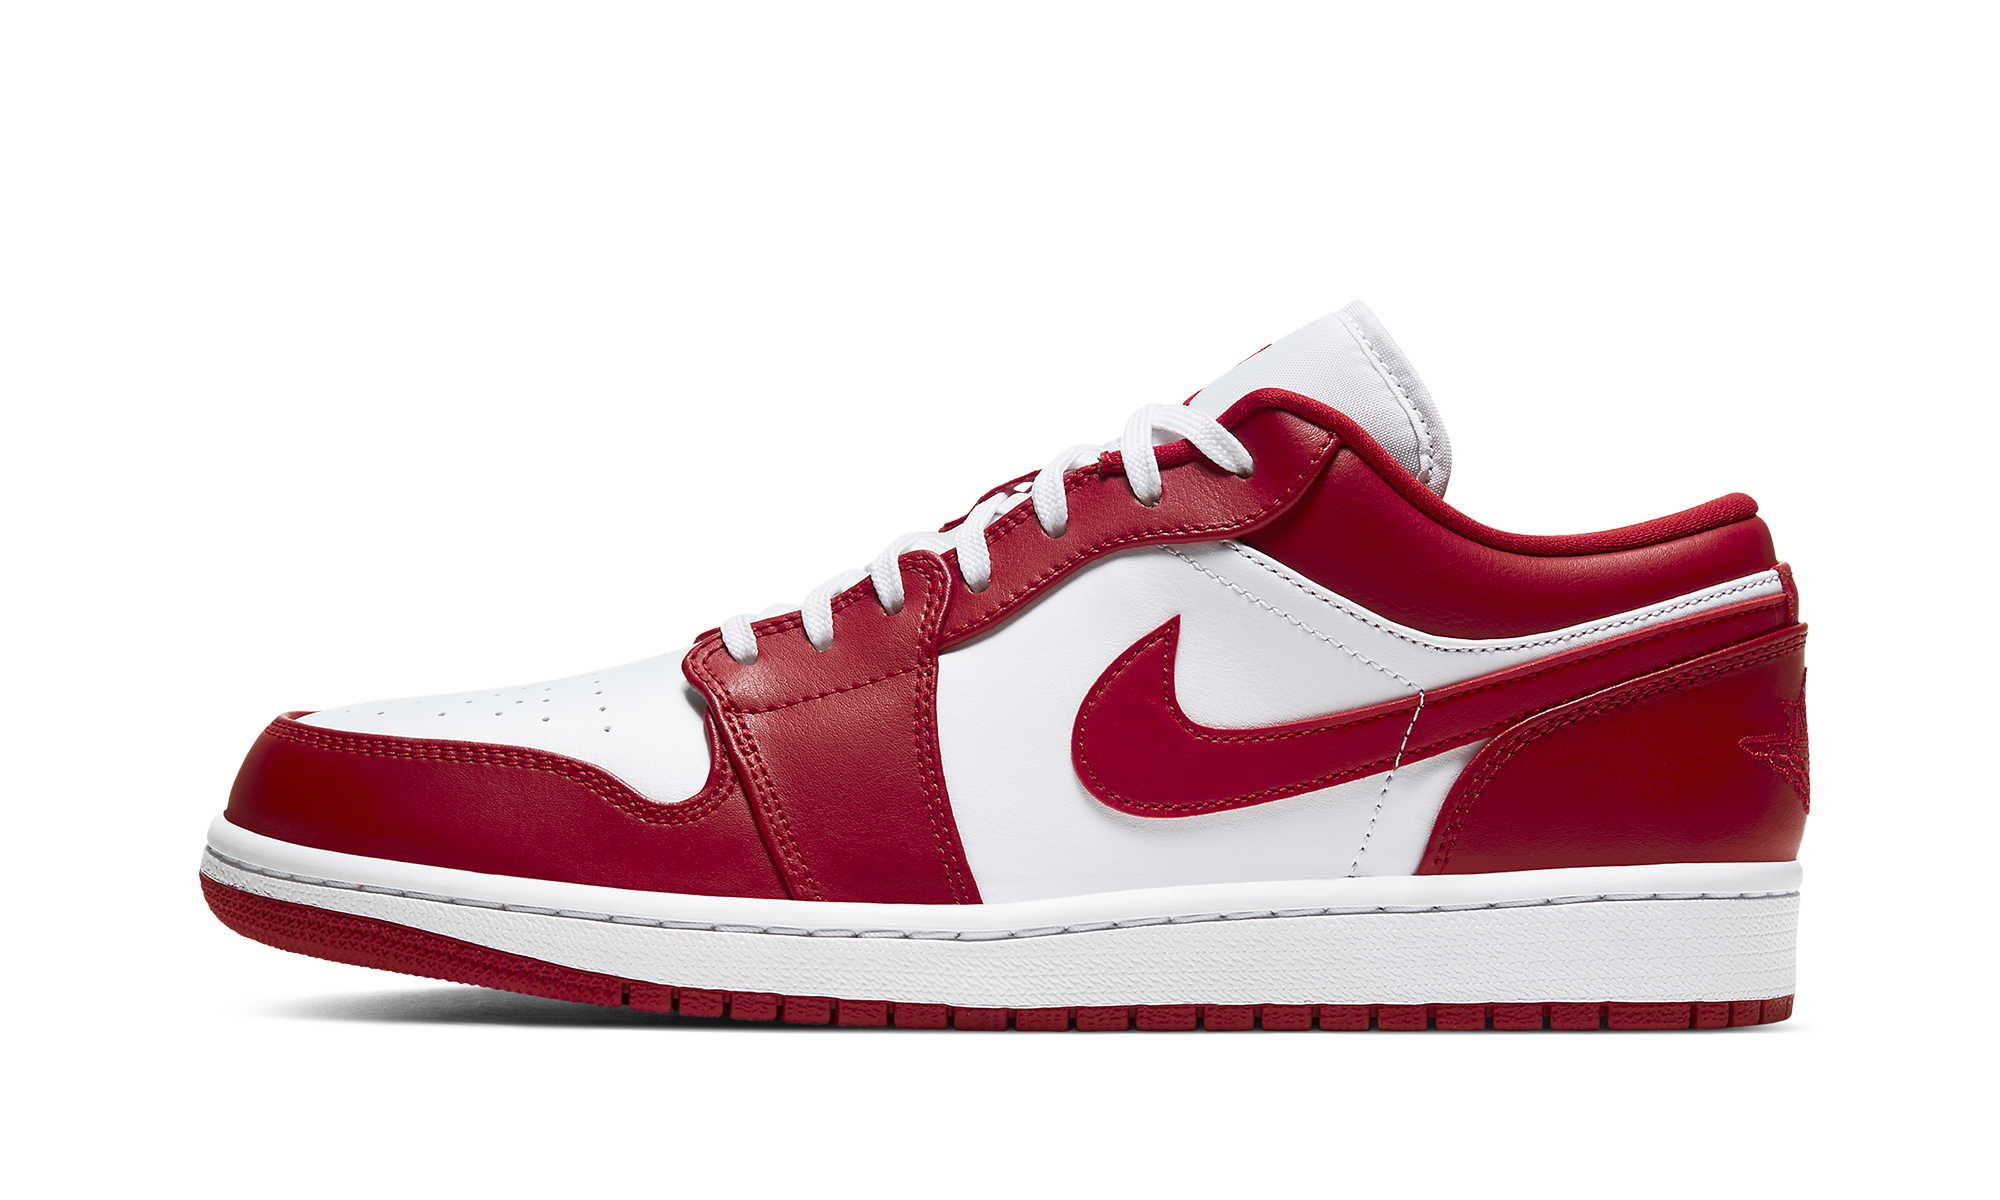 Nike Mens Air Jordan 1 Low "Gym Red" Basketball Sneakers (8) - image 2 of 5